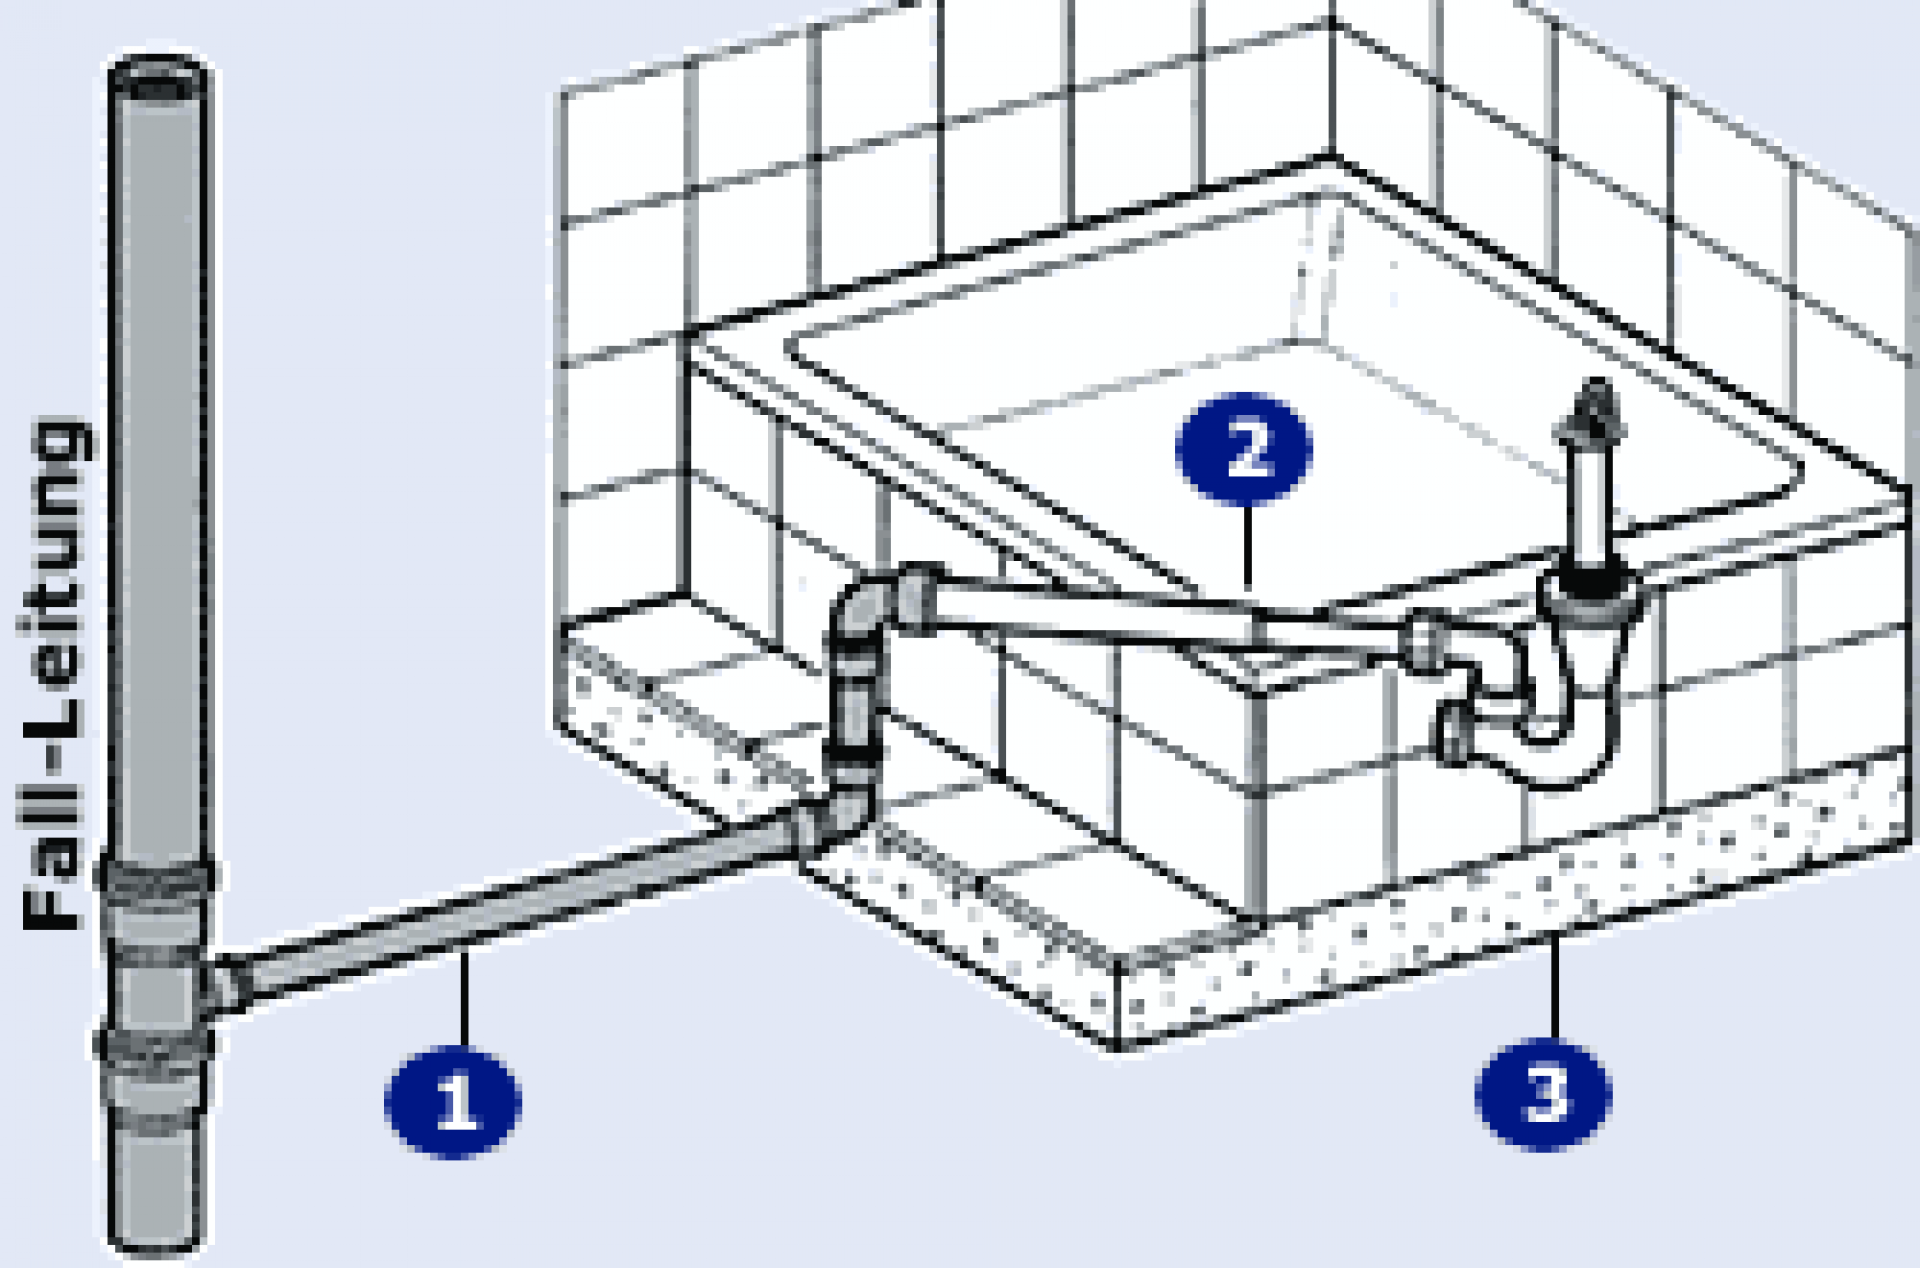 Как подключить душевую кабину к водопроводу и канализации | greendom74.ru